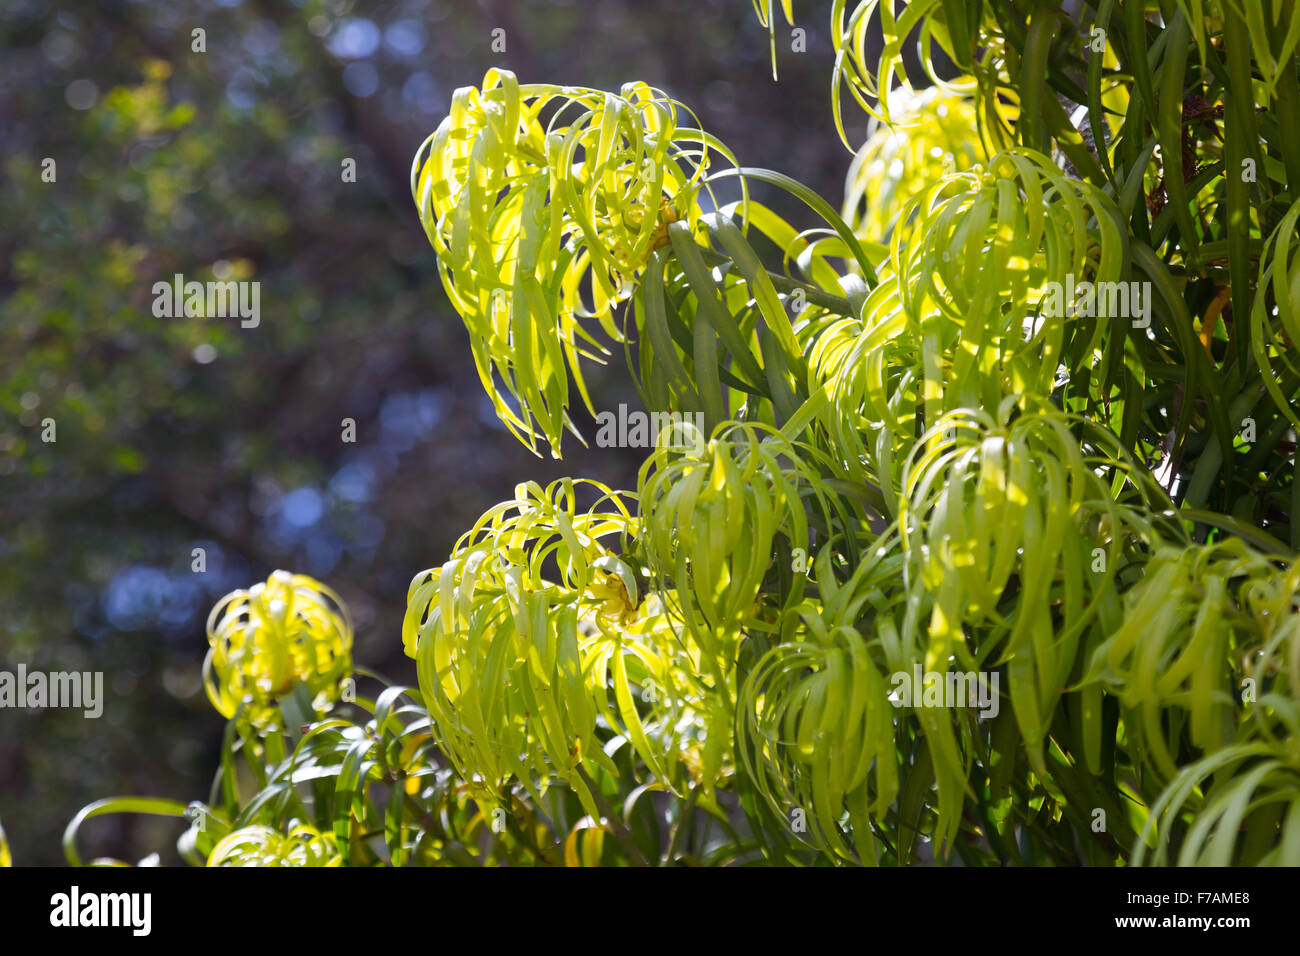 Podocarpus Henkelii plant  in spring Stock Photo